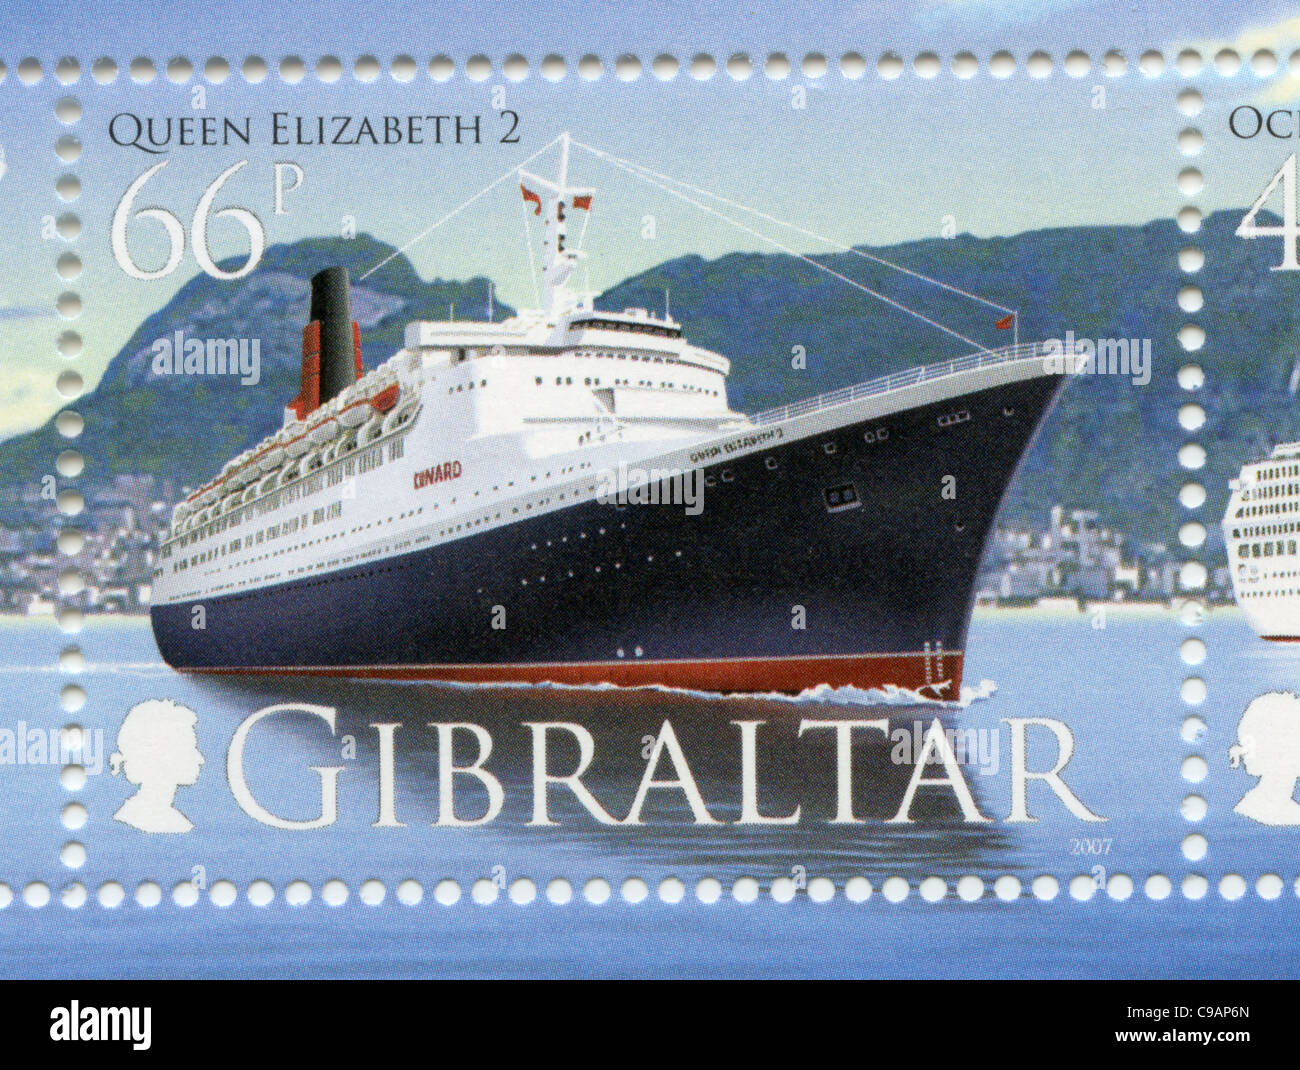 Queen Elizabeth 2 Gibraltar postage stamp Stock Photo